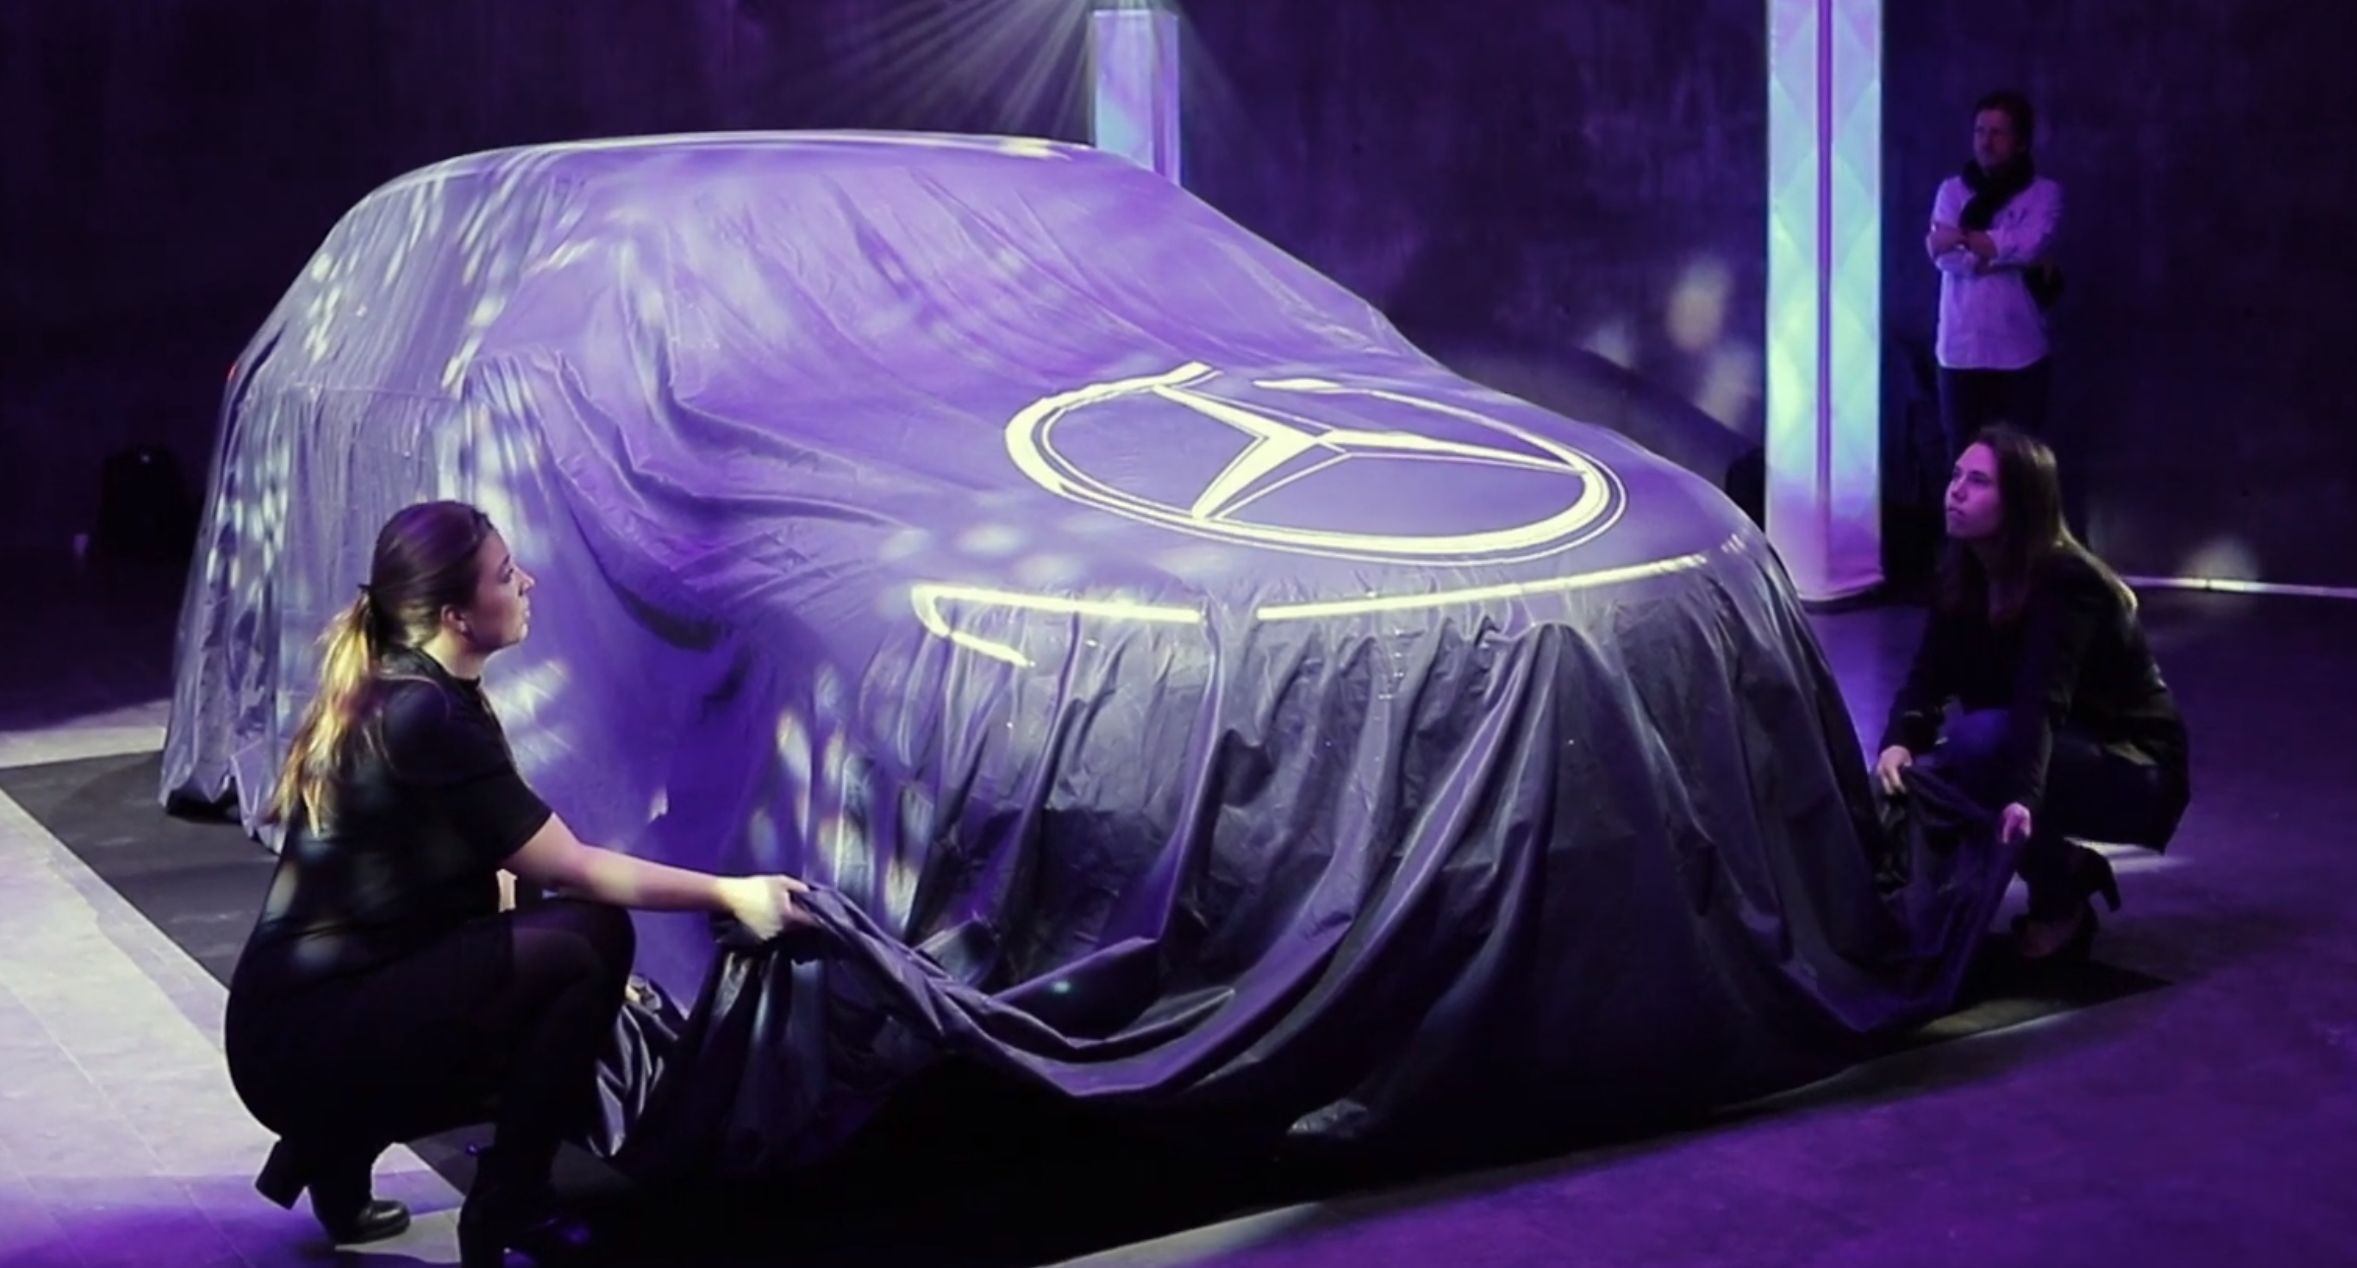 Vi var der da Mercedes lanserte sin nye el-bil: over 400 km og firehjulstrekk